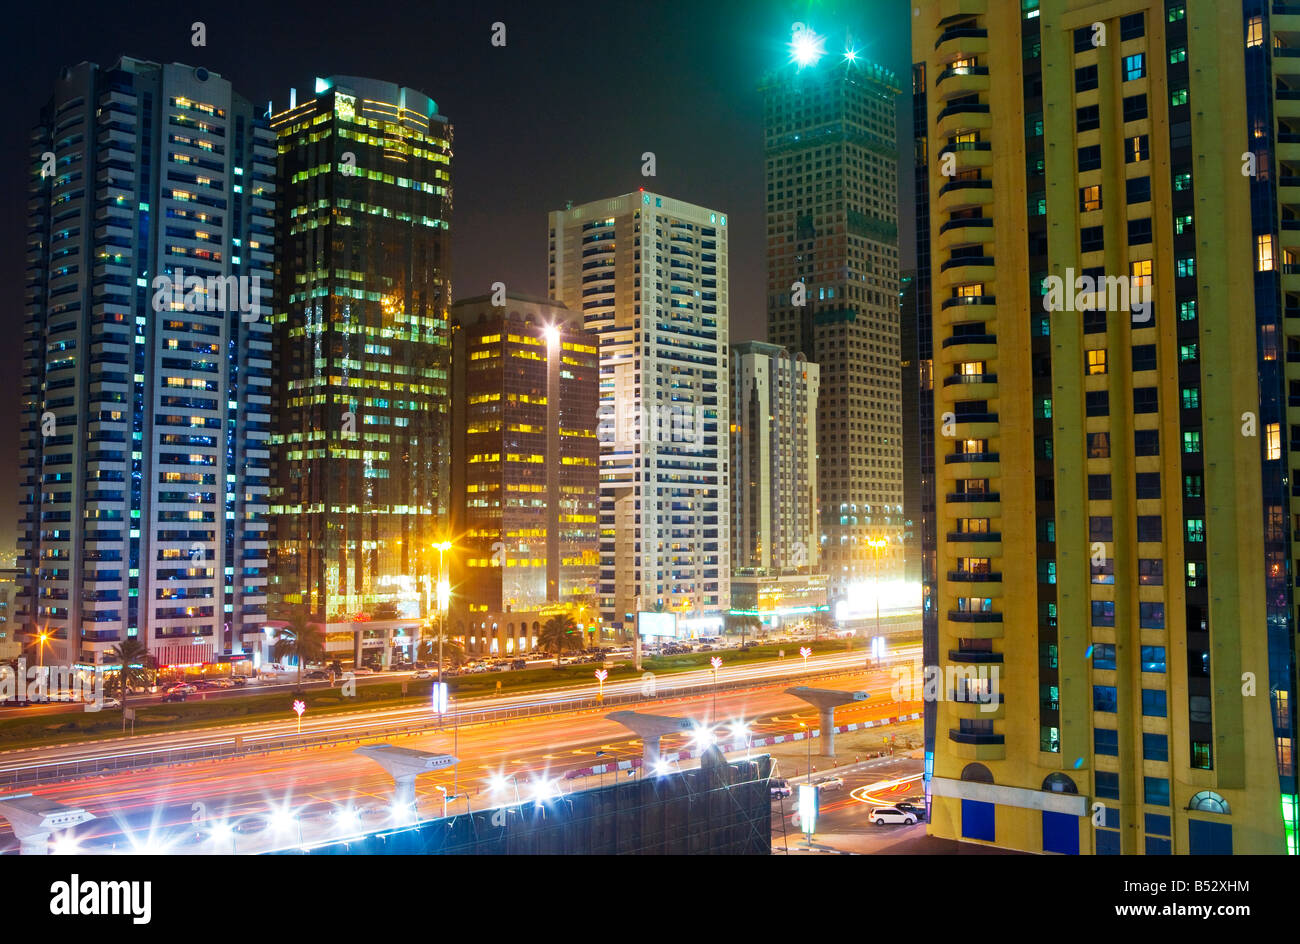 United Arab Emirates, Dubai, Sheikh Zayed Road. Stock Photo